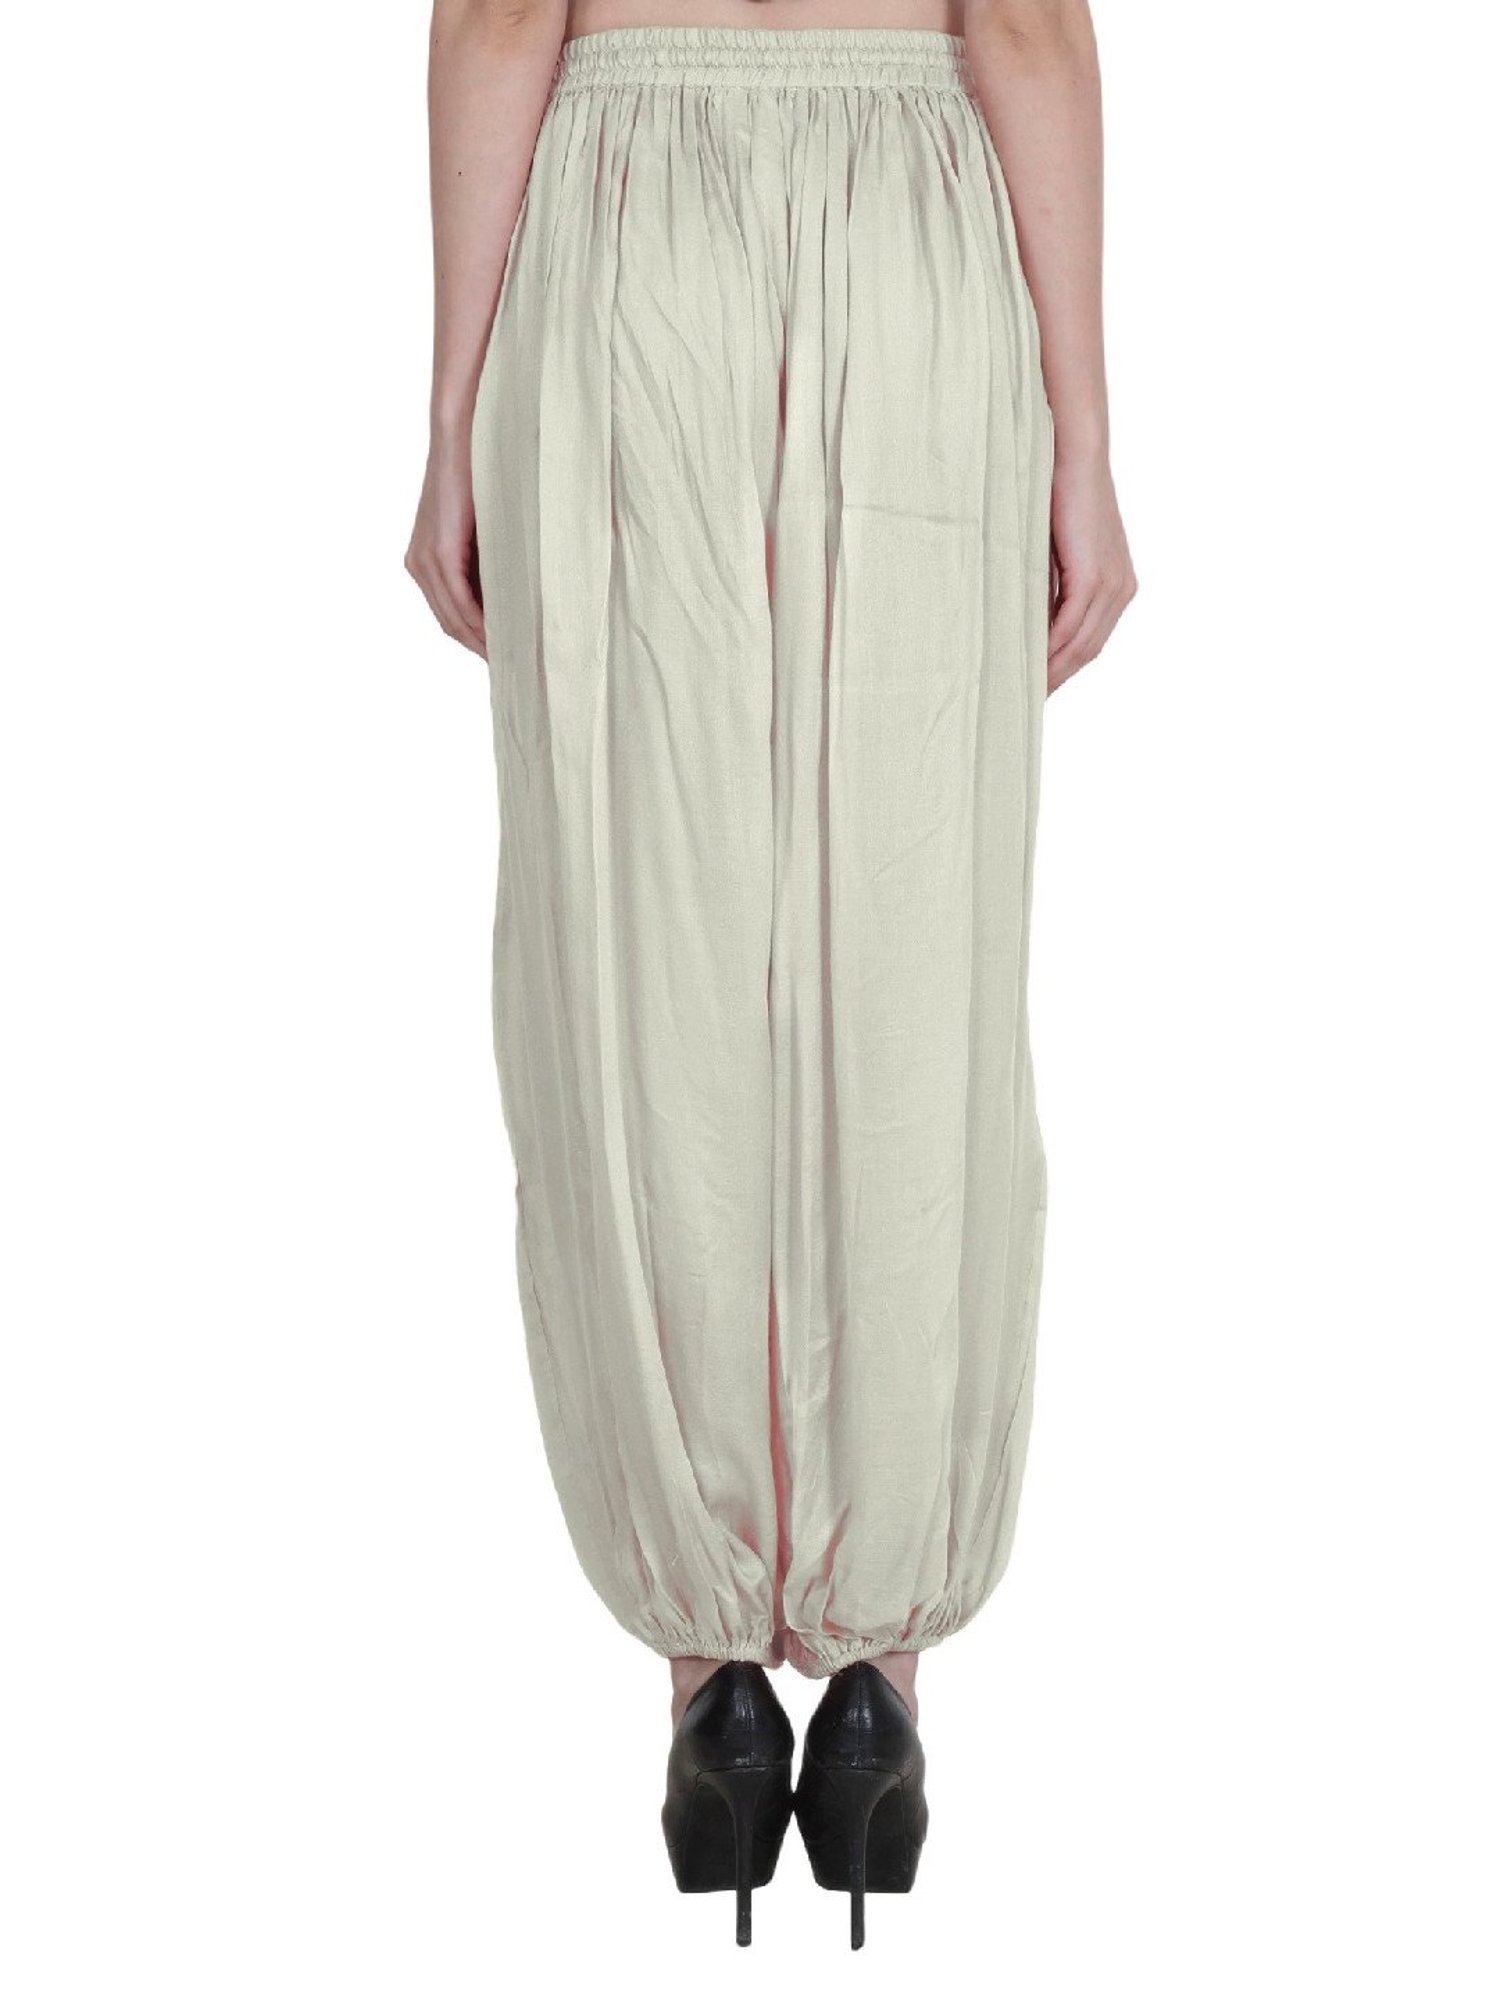 Cotton Linen Harem Pants For Women Vintage Printed Wide Leg Trousers –  UkEUexpress